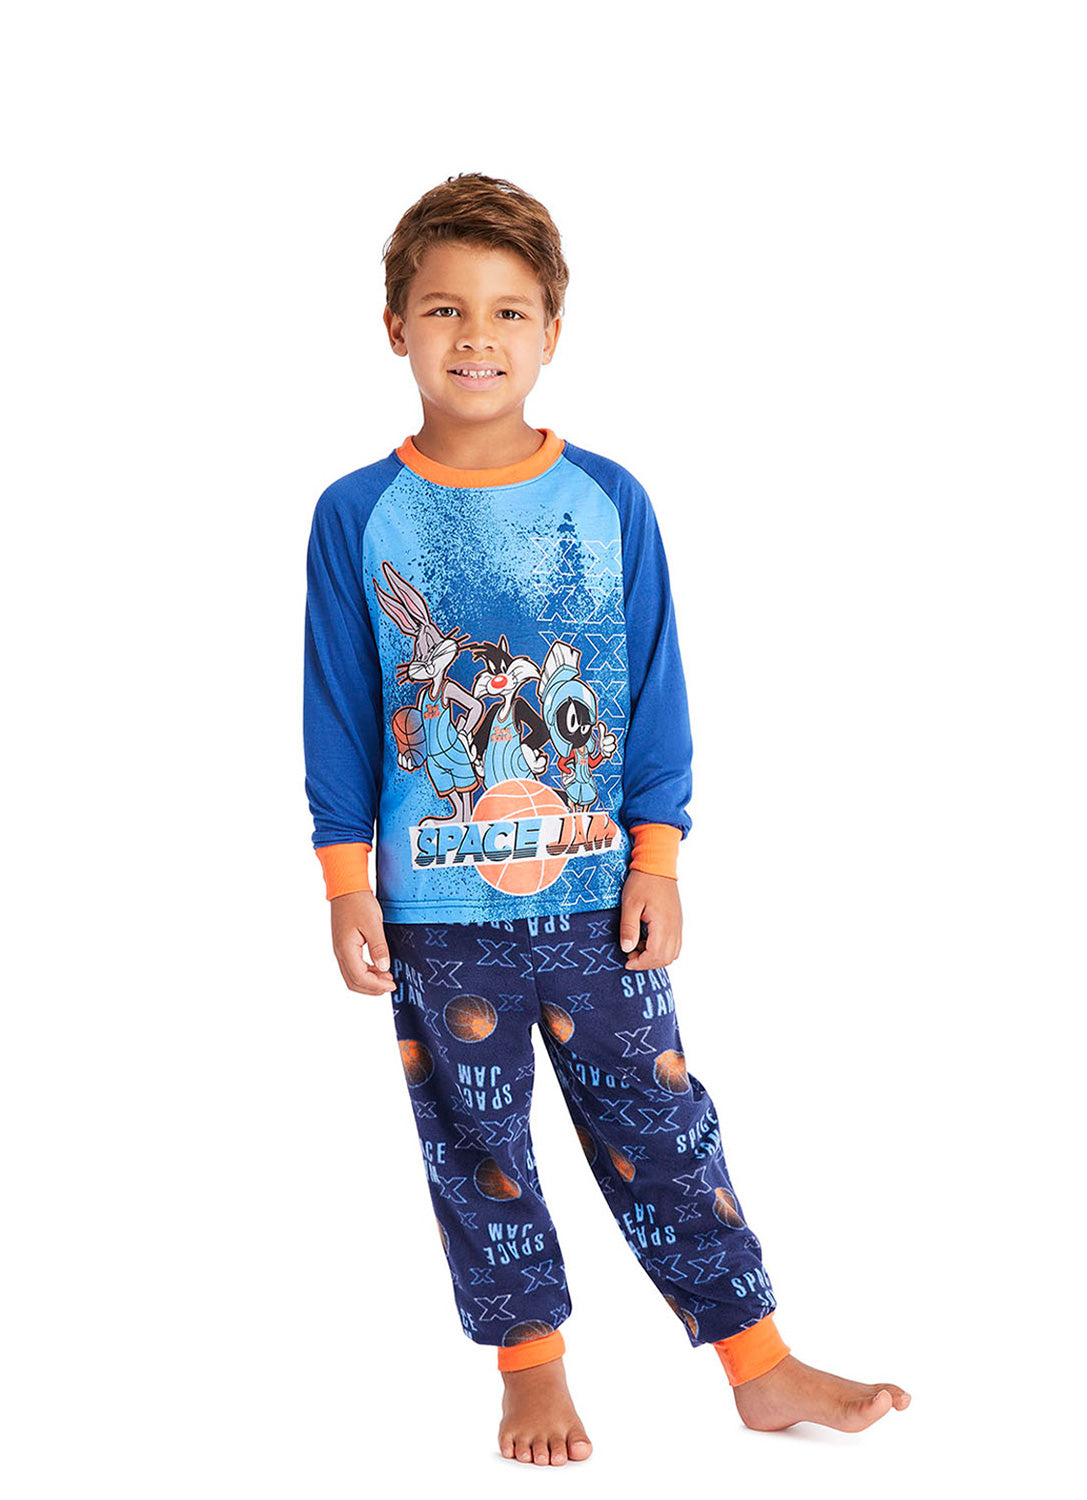 Boy wearing Space Jam 2 Pajama Set (Blue)